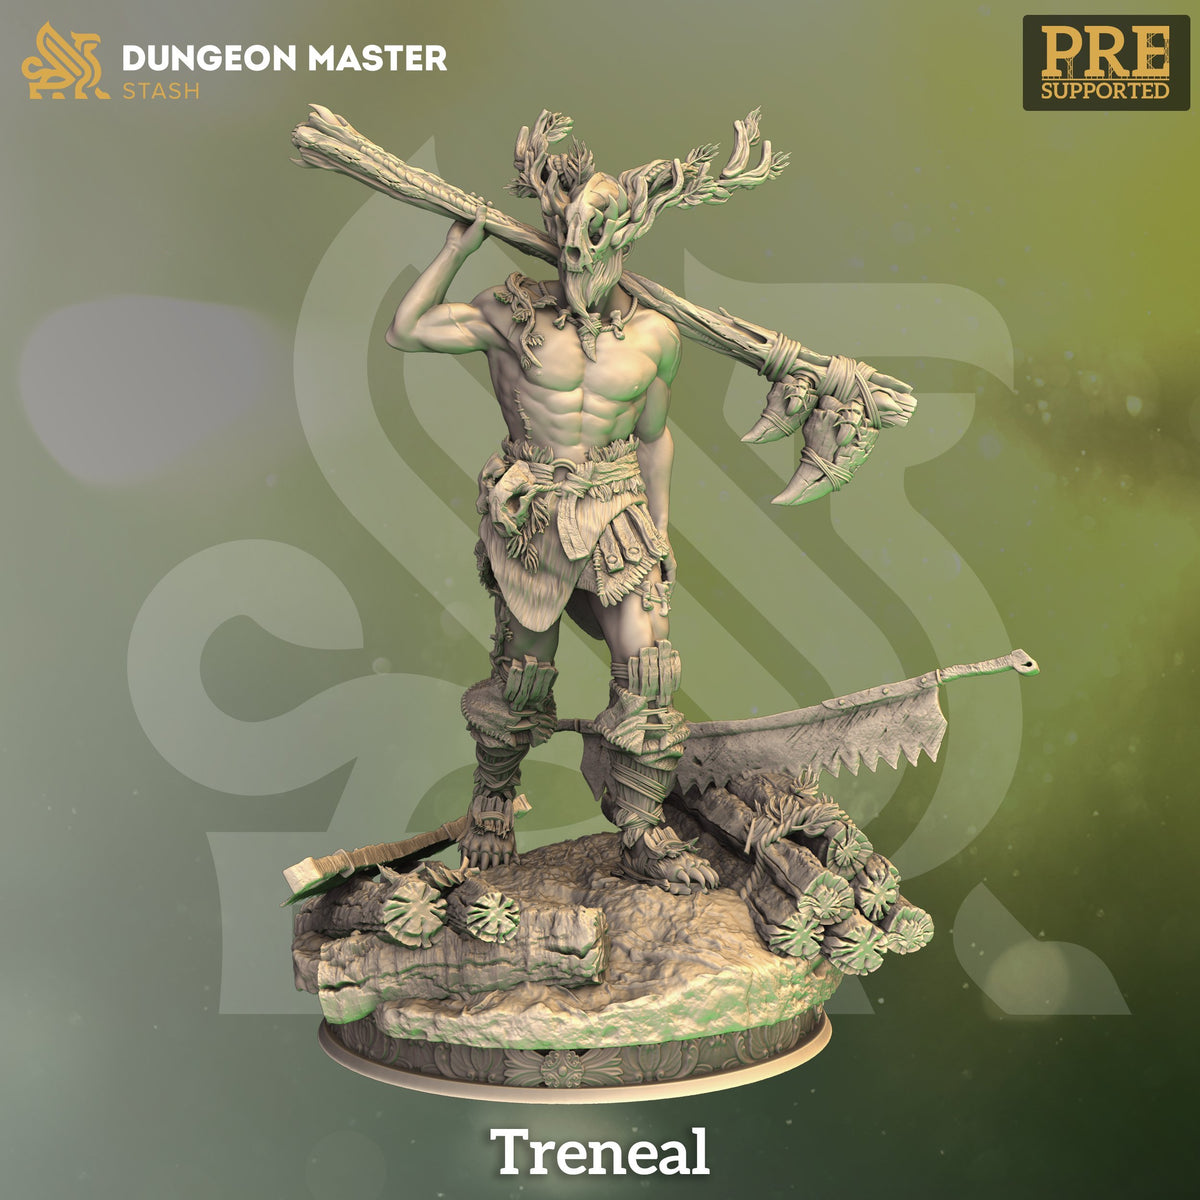 Treneal - The Printable Dragon